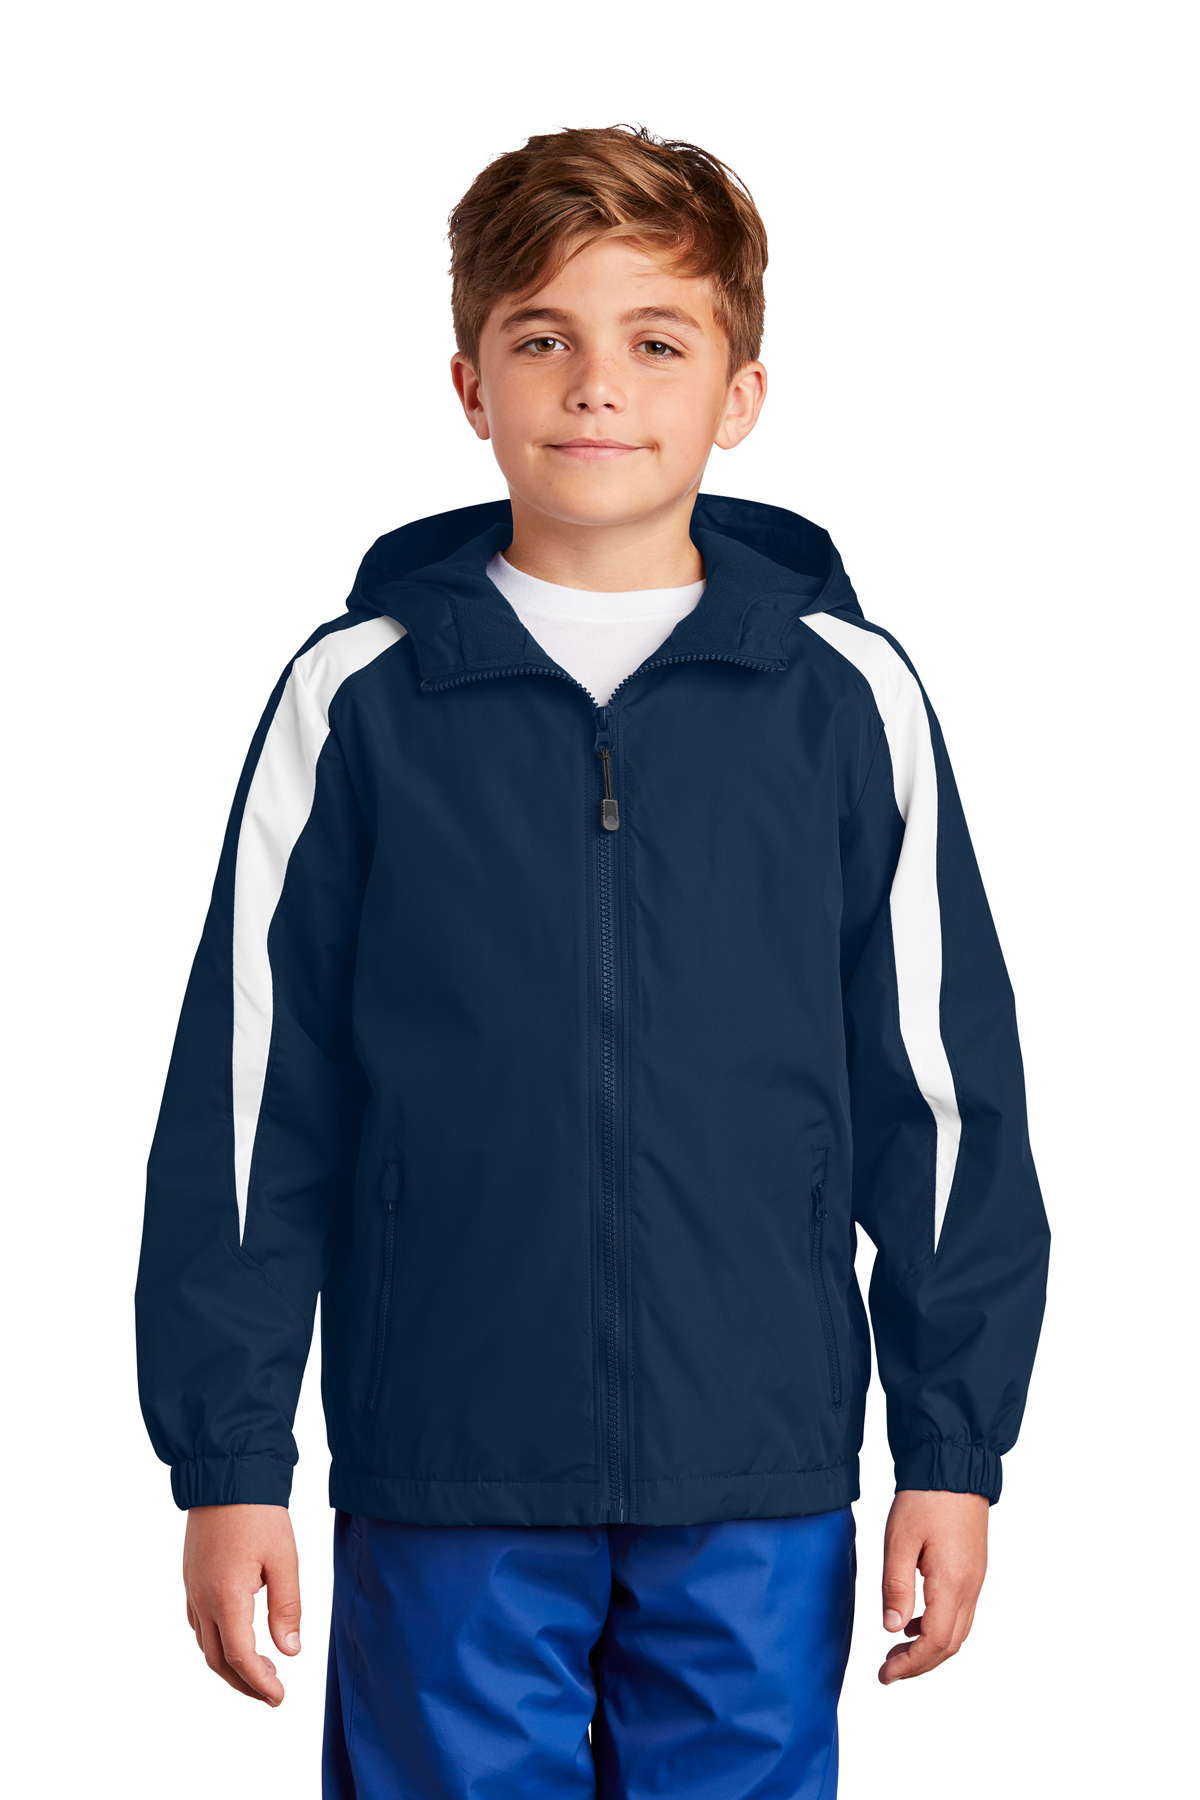 Sport-Tek Youth Fleece-Lined Colorblock Jacket | Product | Sport-Tek